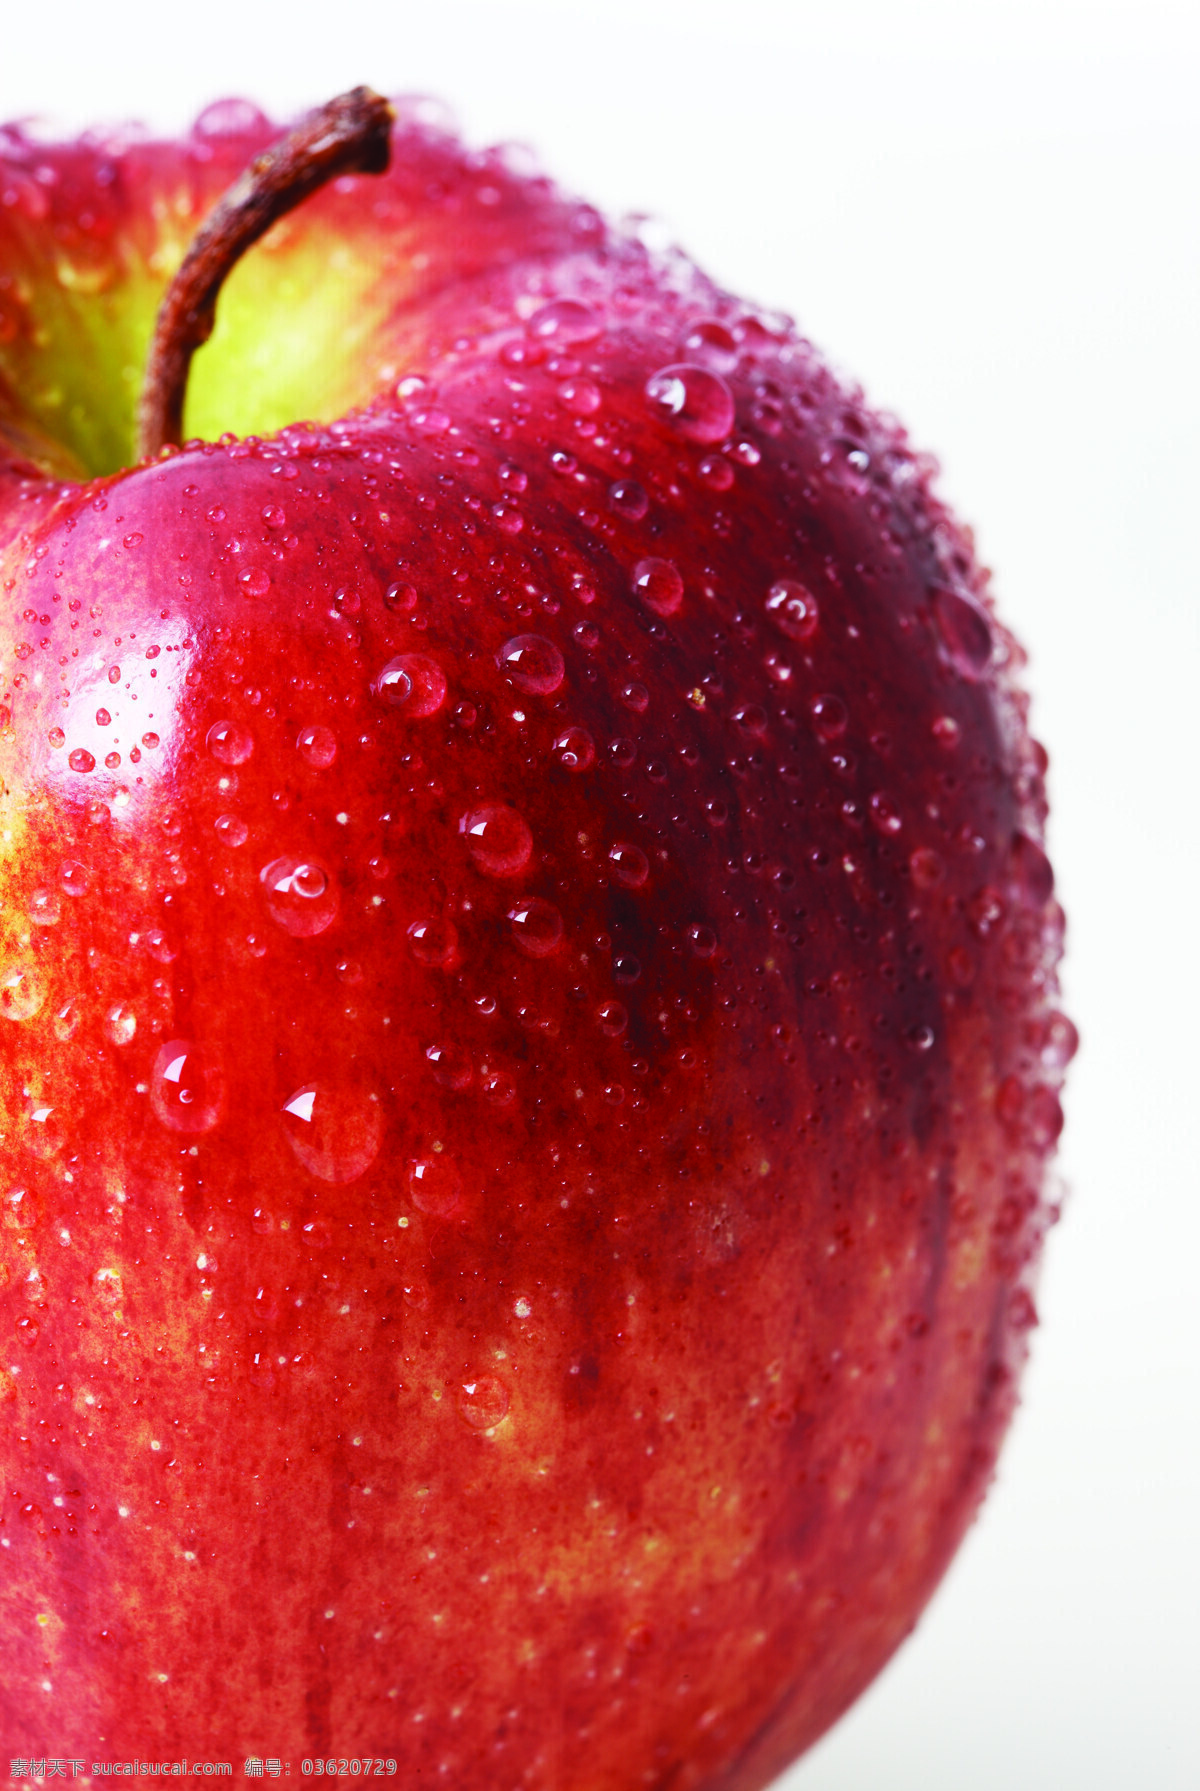 苹果 苹果特写 半个苹果 红苹果 甜苹果 苹果果肉 苹果汁 进口苹果 新鲜苹果 水果 新鲜水果 水果蔬菜 超市水果 苹果批发 水果批发 绿色生活 健康生活 健康饮食 生物世界